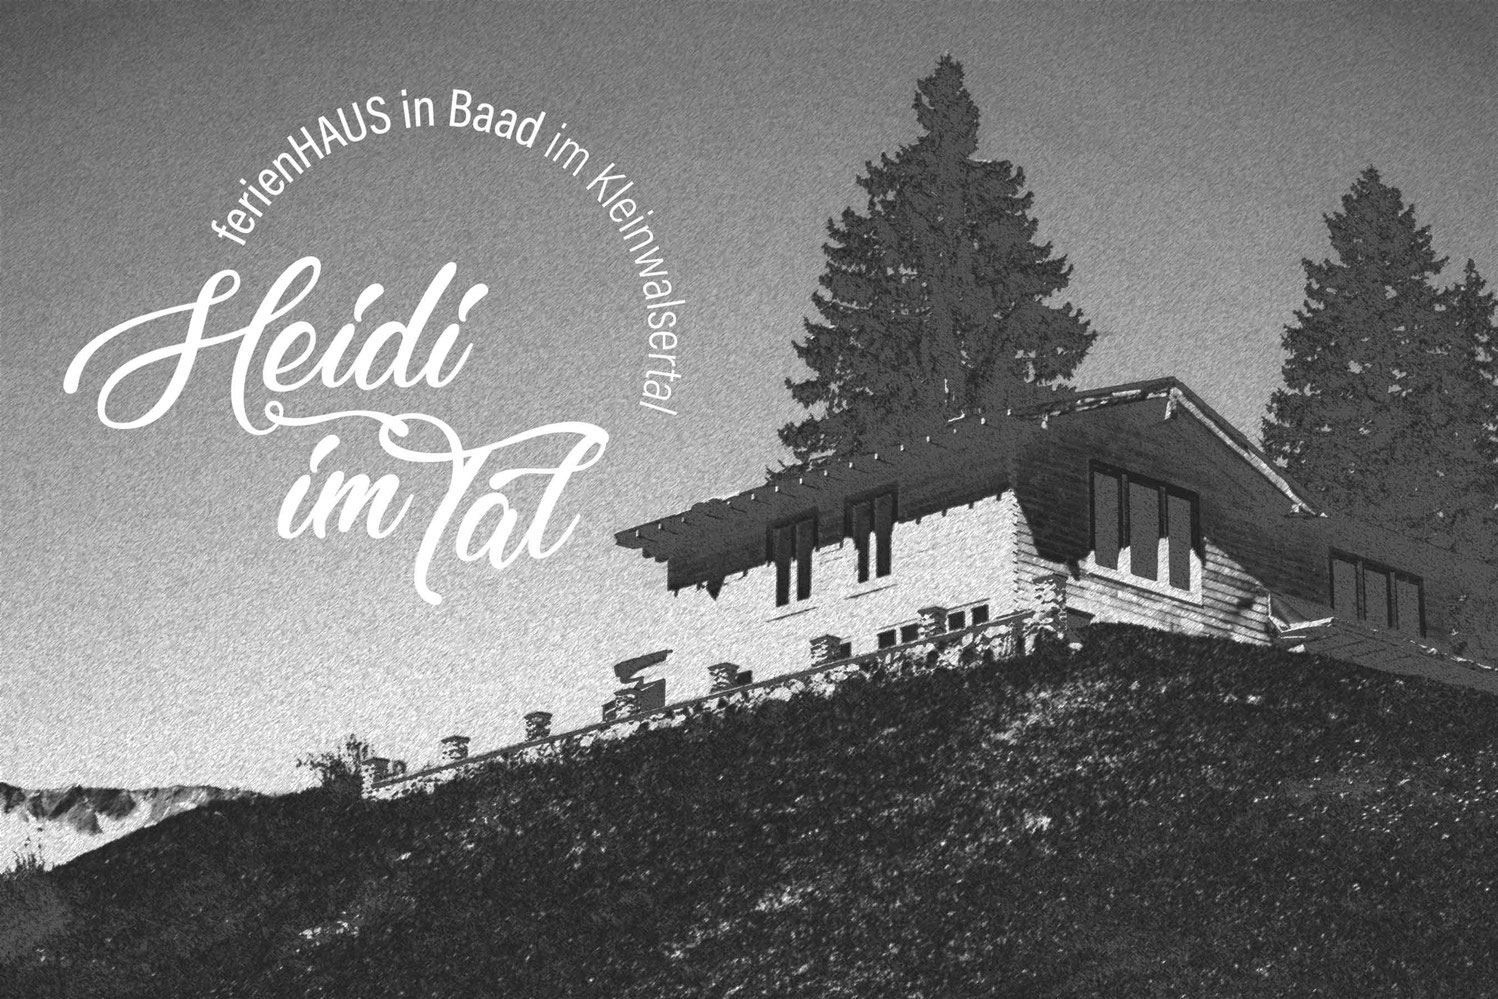 Ferienhaus in Baad im Kleinwalsertal, Mittelberg, Ferienwohnung für 2 bis 6 Personen, Heidi im Tal